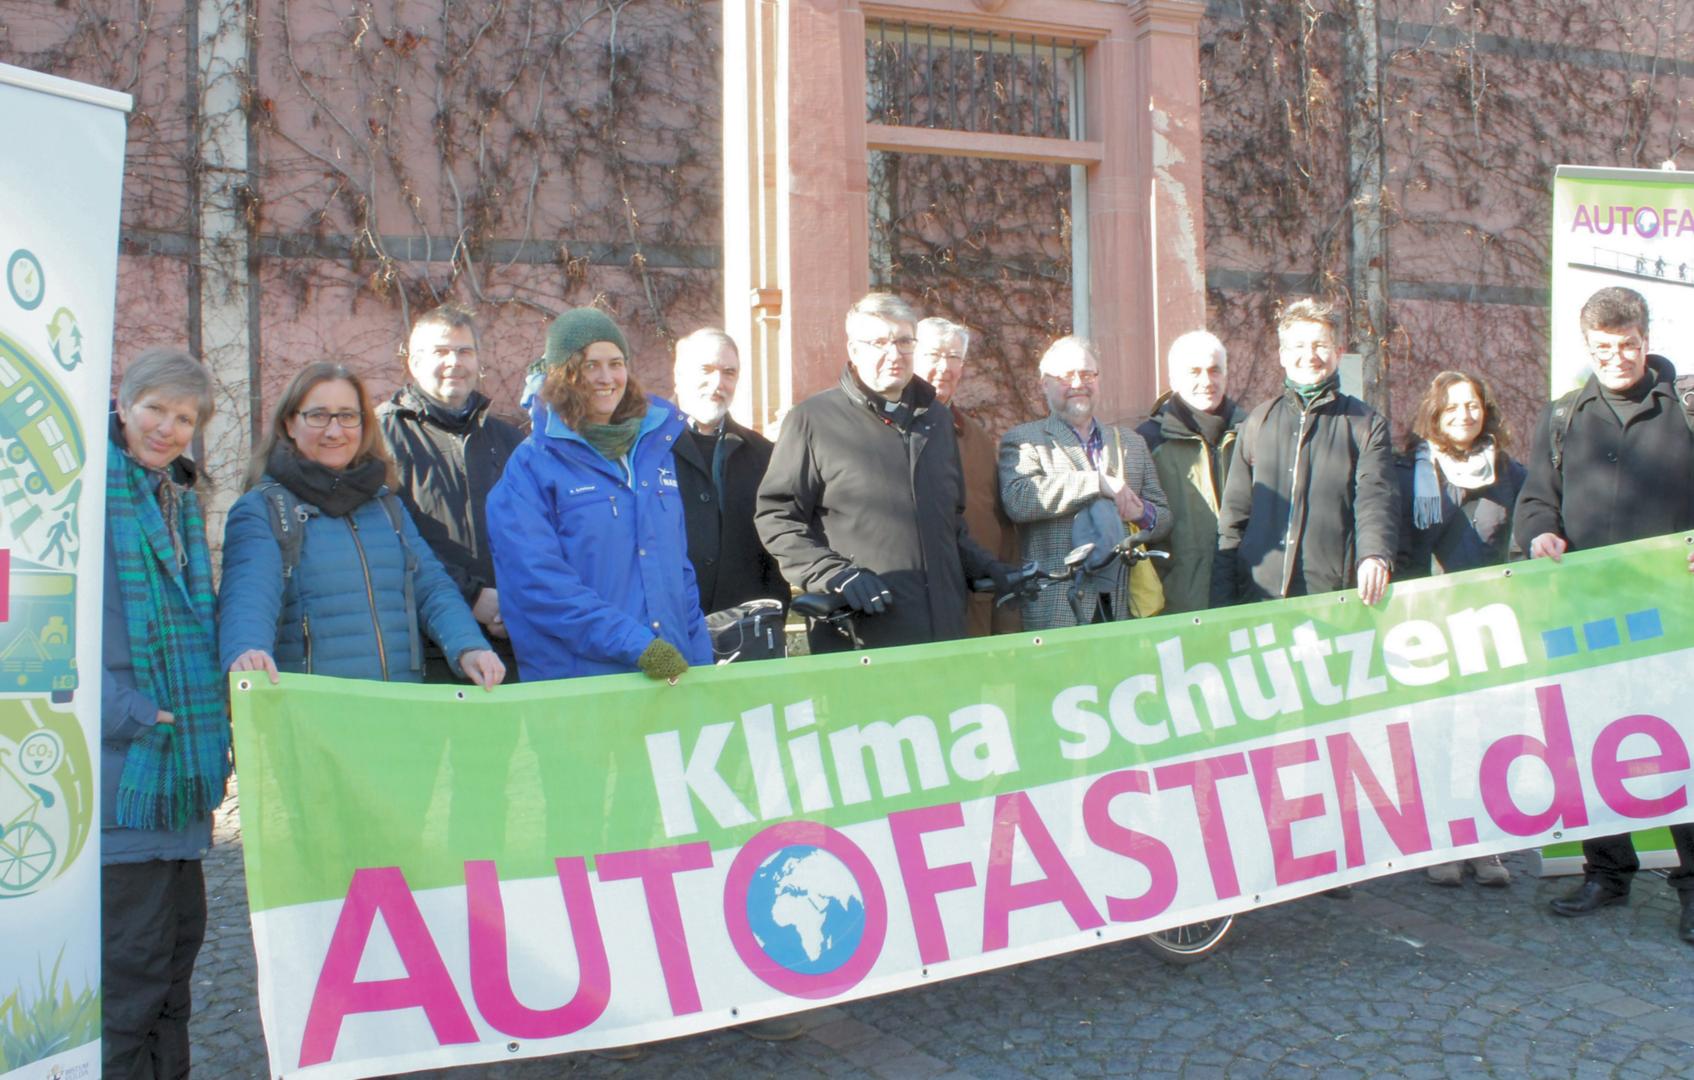 Autostasten 2018 (c) Bistum Mainz / Matschak